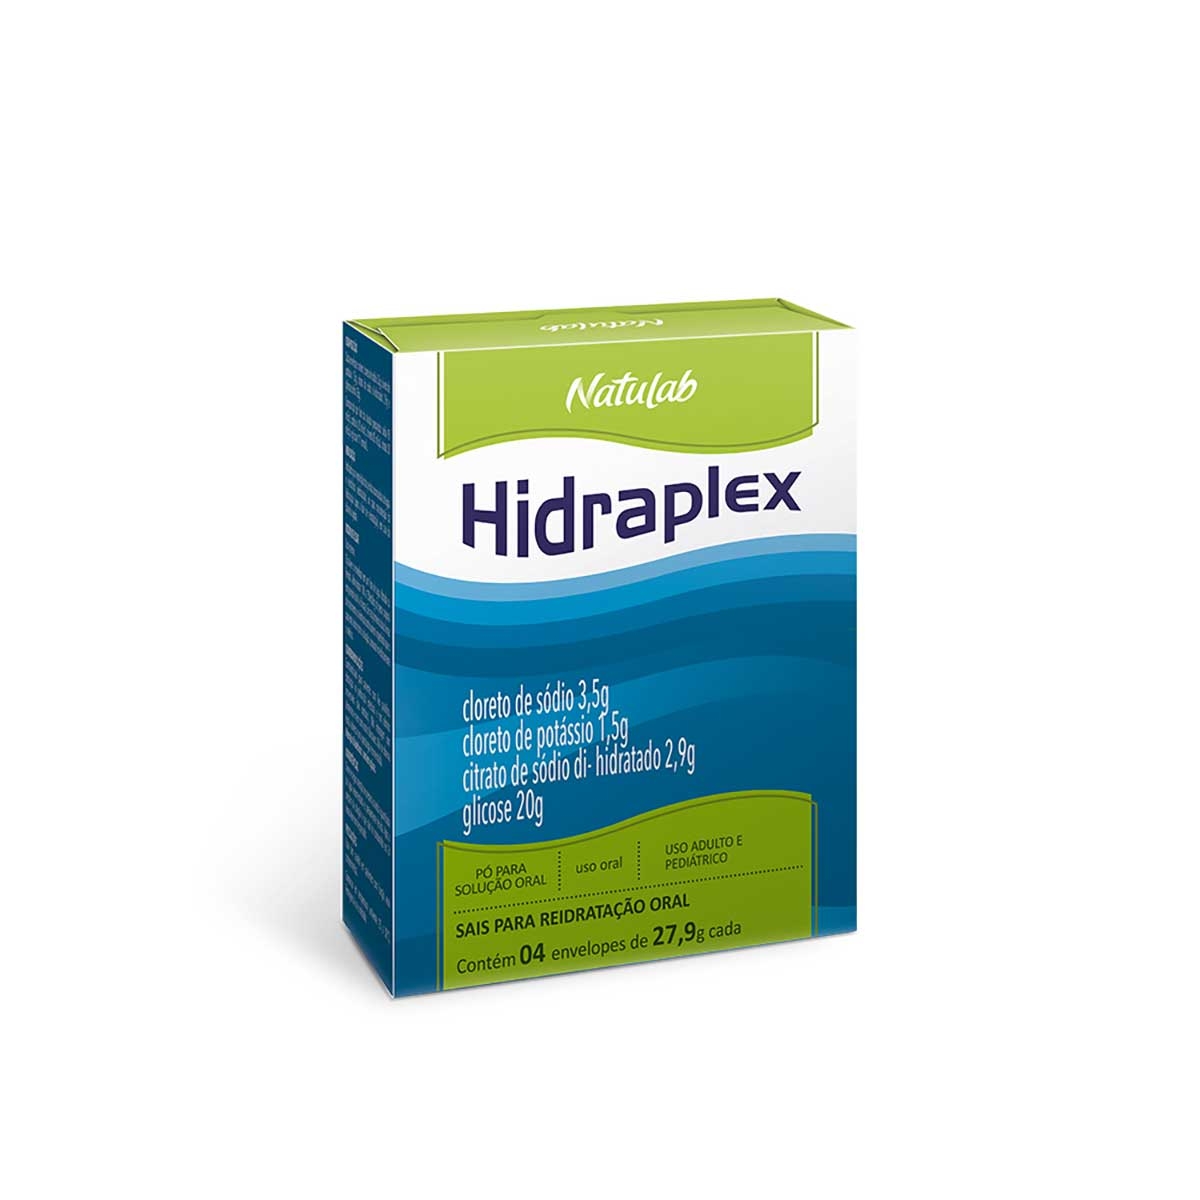 Sais para Reidratação Oral Hidraplex Natulab Pó para Solução Oral 4 envelopes de 27,9g cada